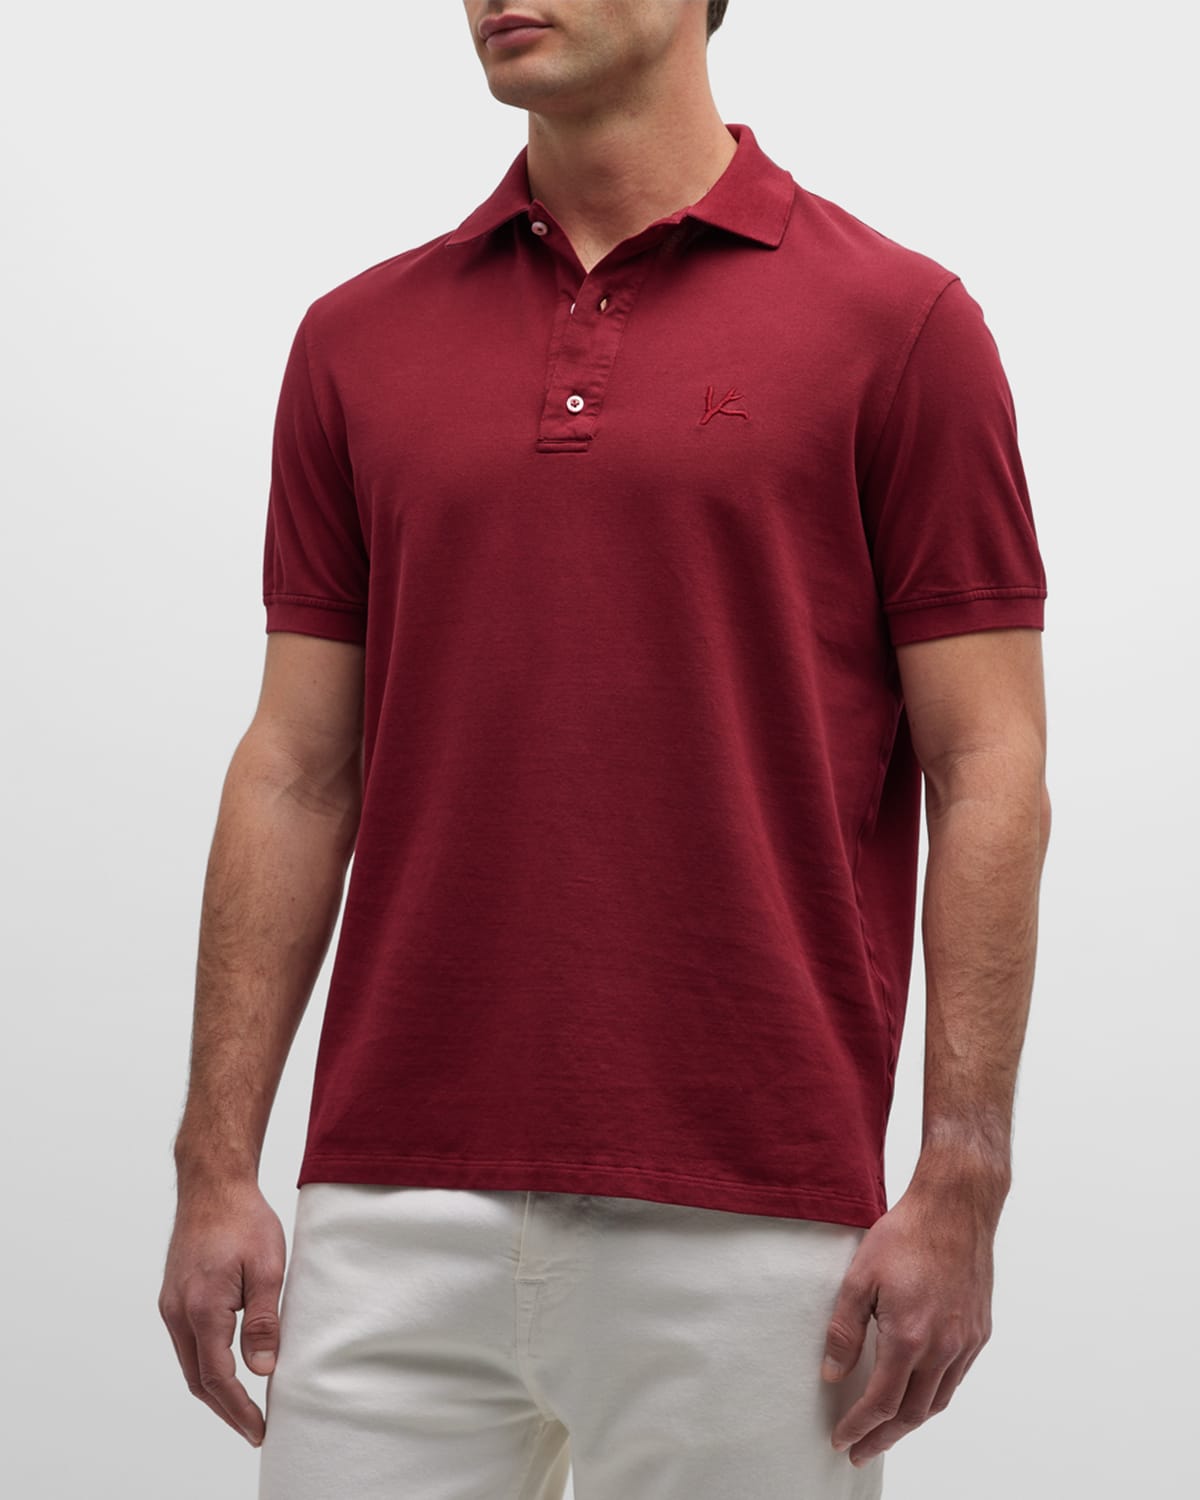 Isaia Men's Cotton Pique Polo Shirt